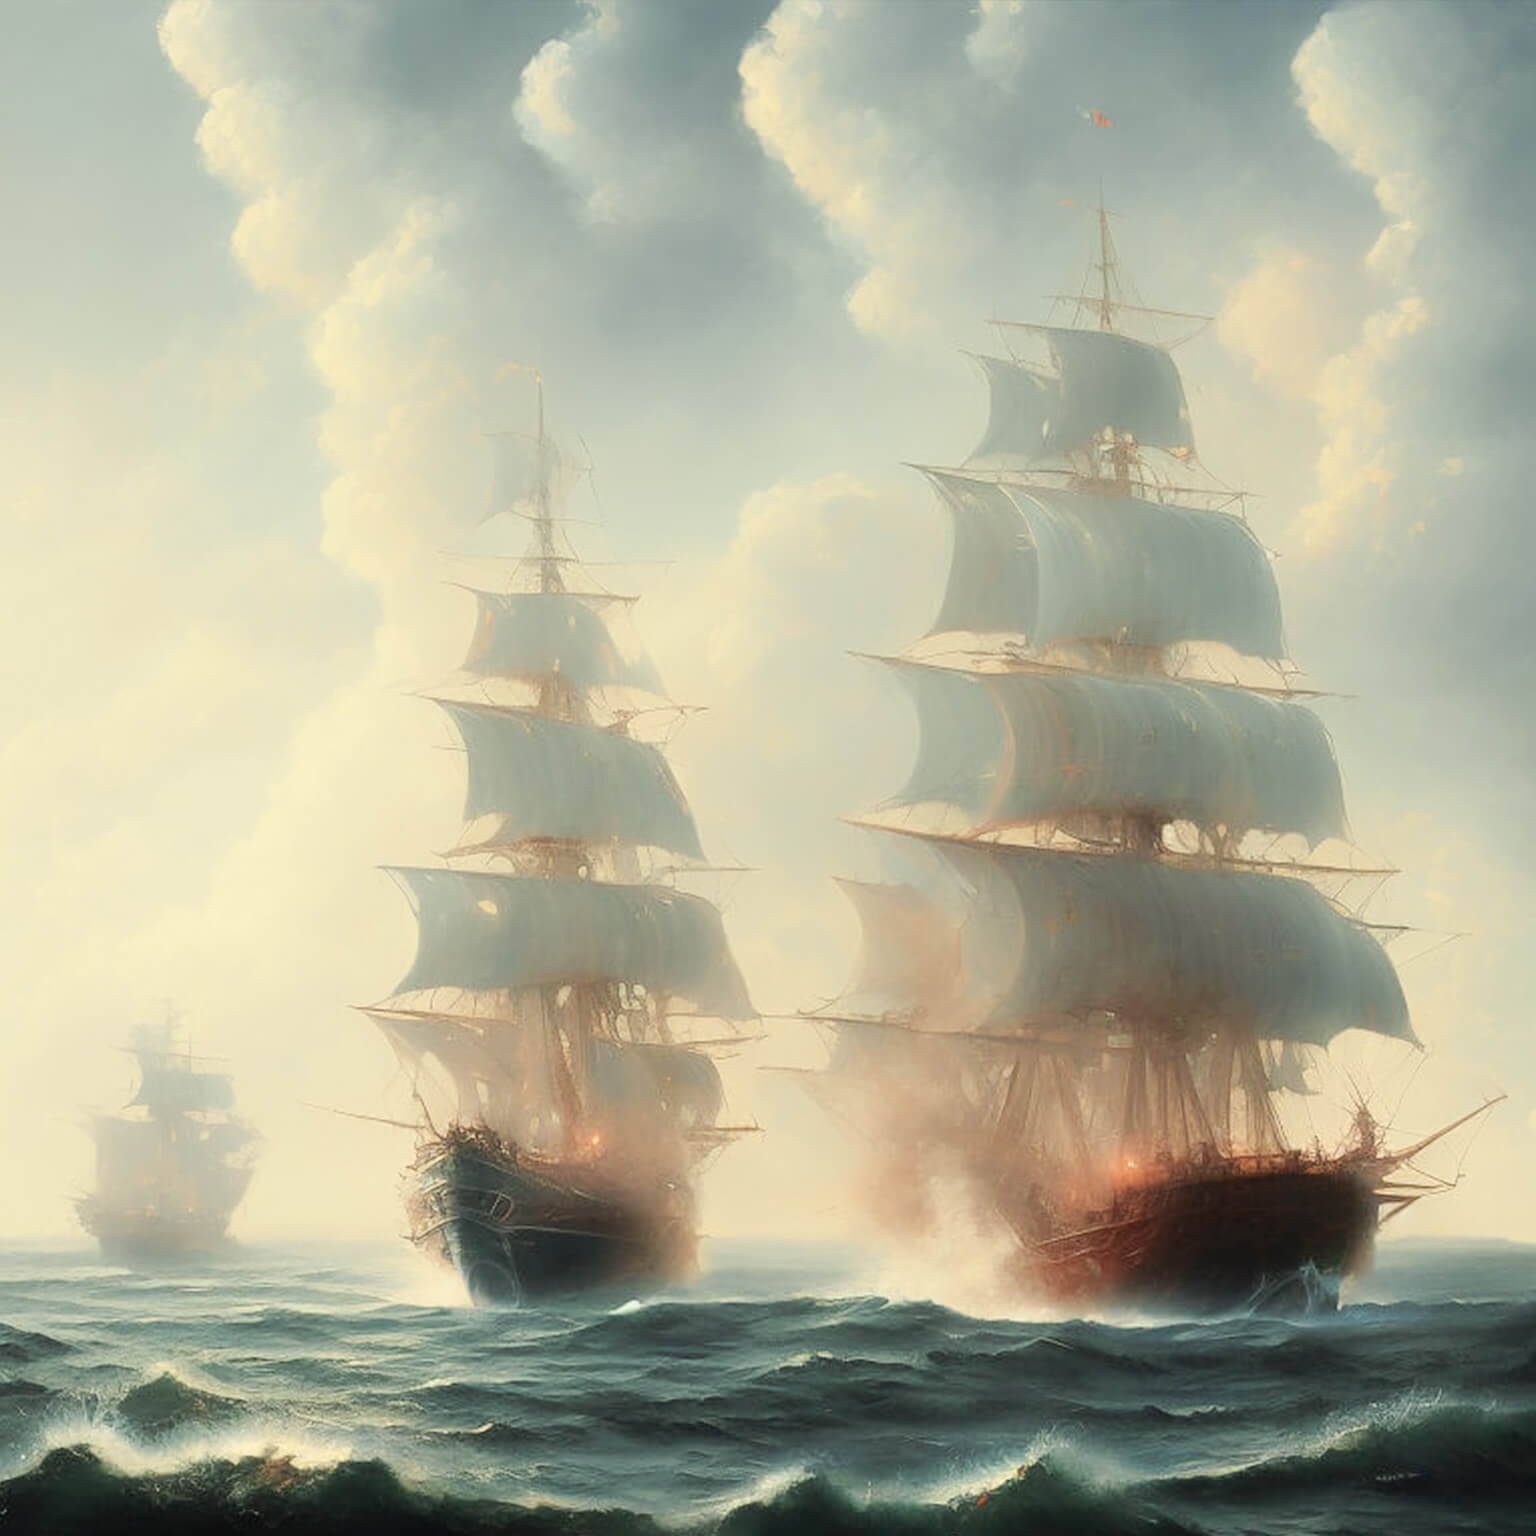 Ein KI Bild von einer Flotte von alten Segelschiffen die sich mit Kanonen beschießen